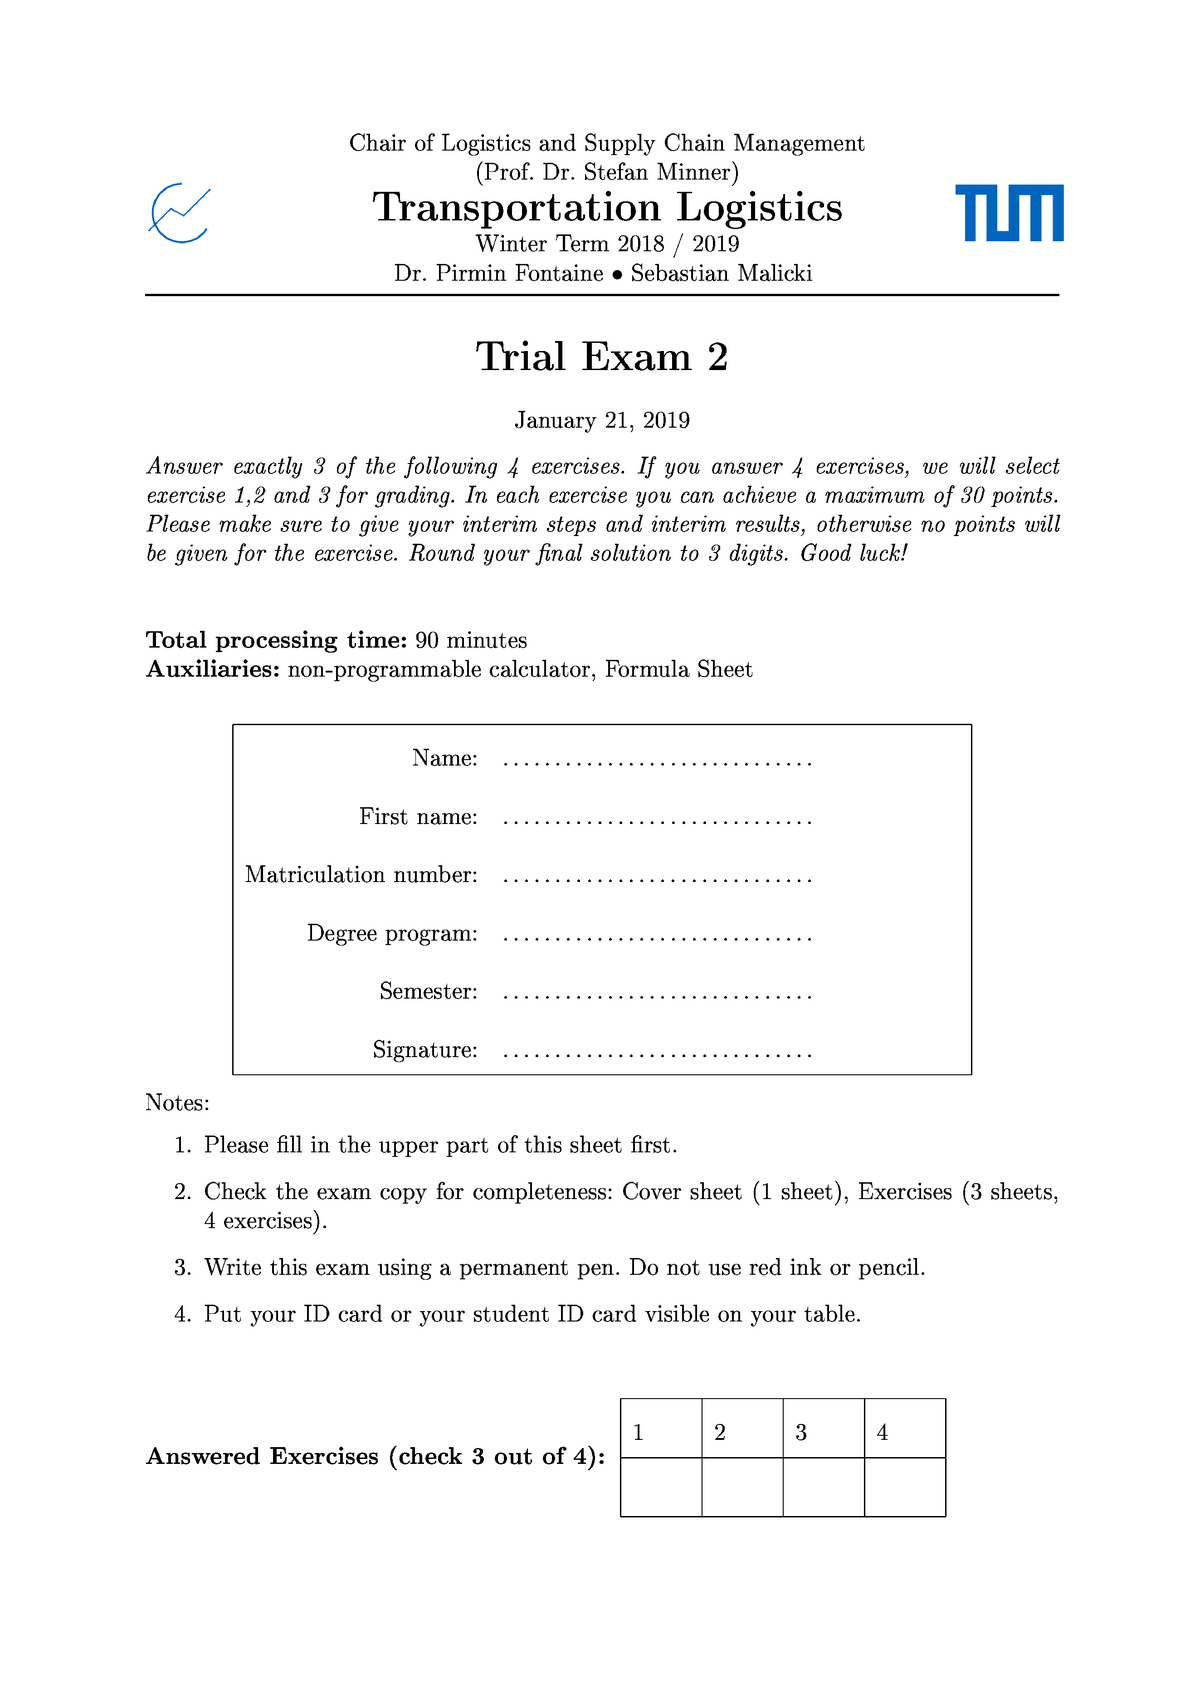 Trial Exam No. 2222 - Probekalusur 2222 - Transportation Logistics - StuDocu